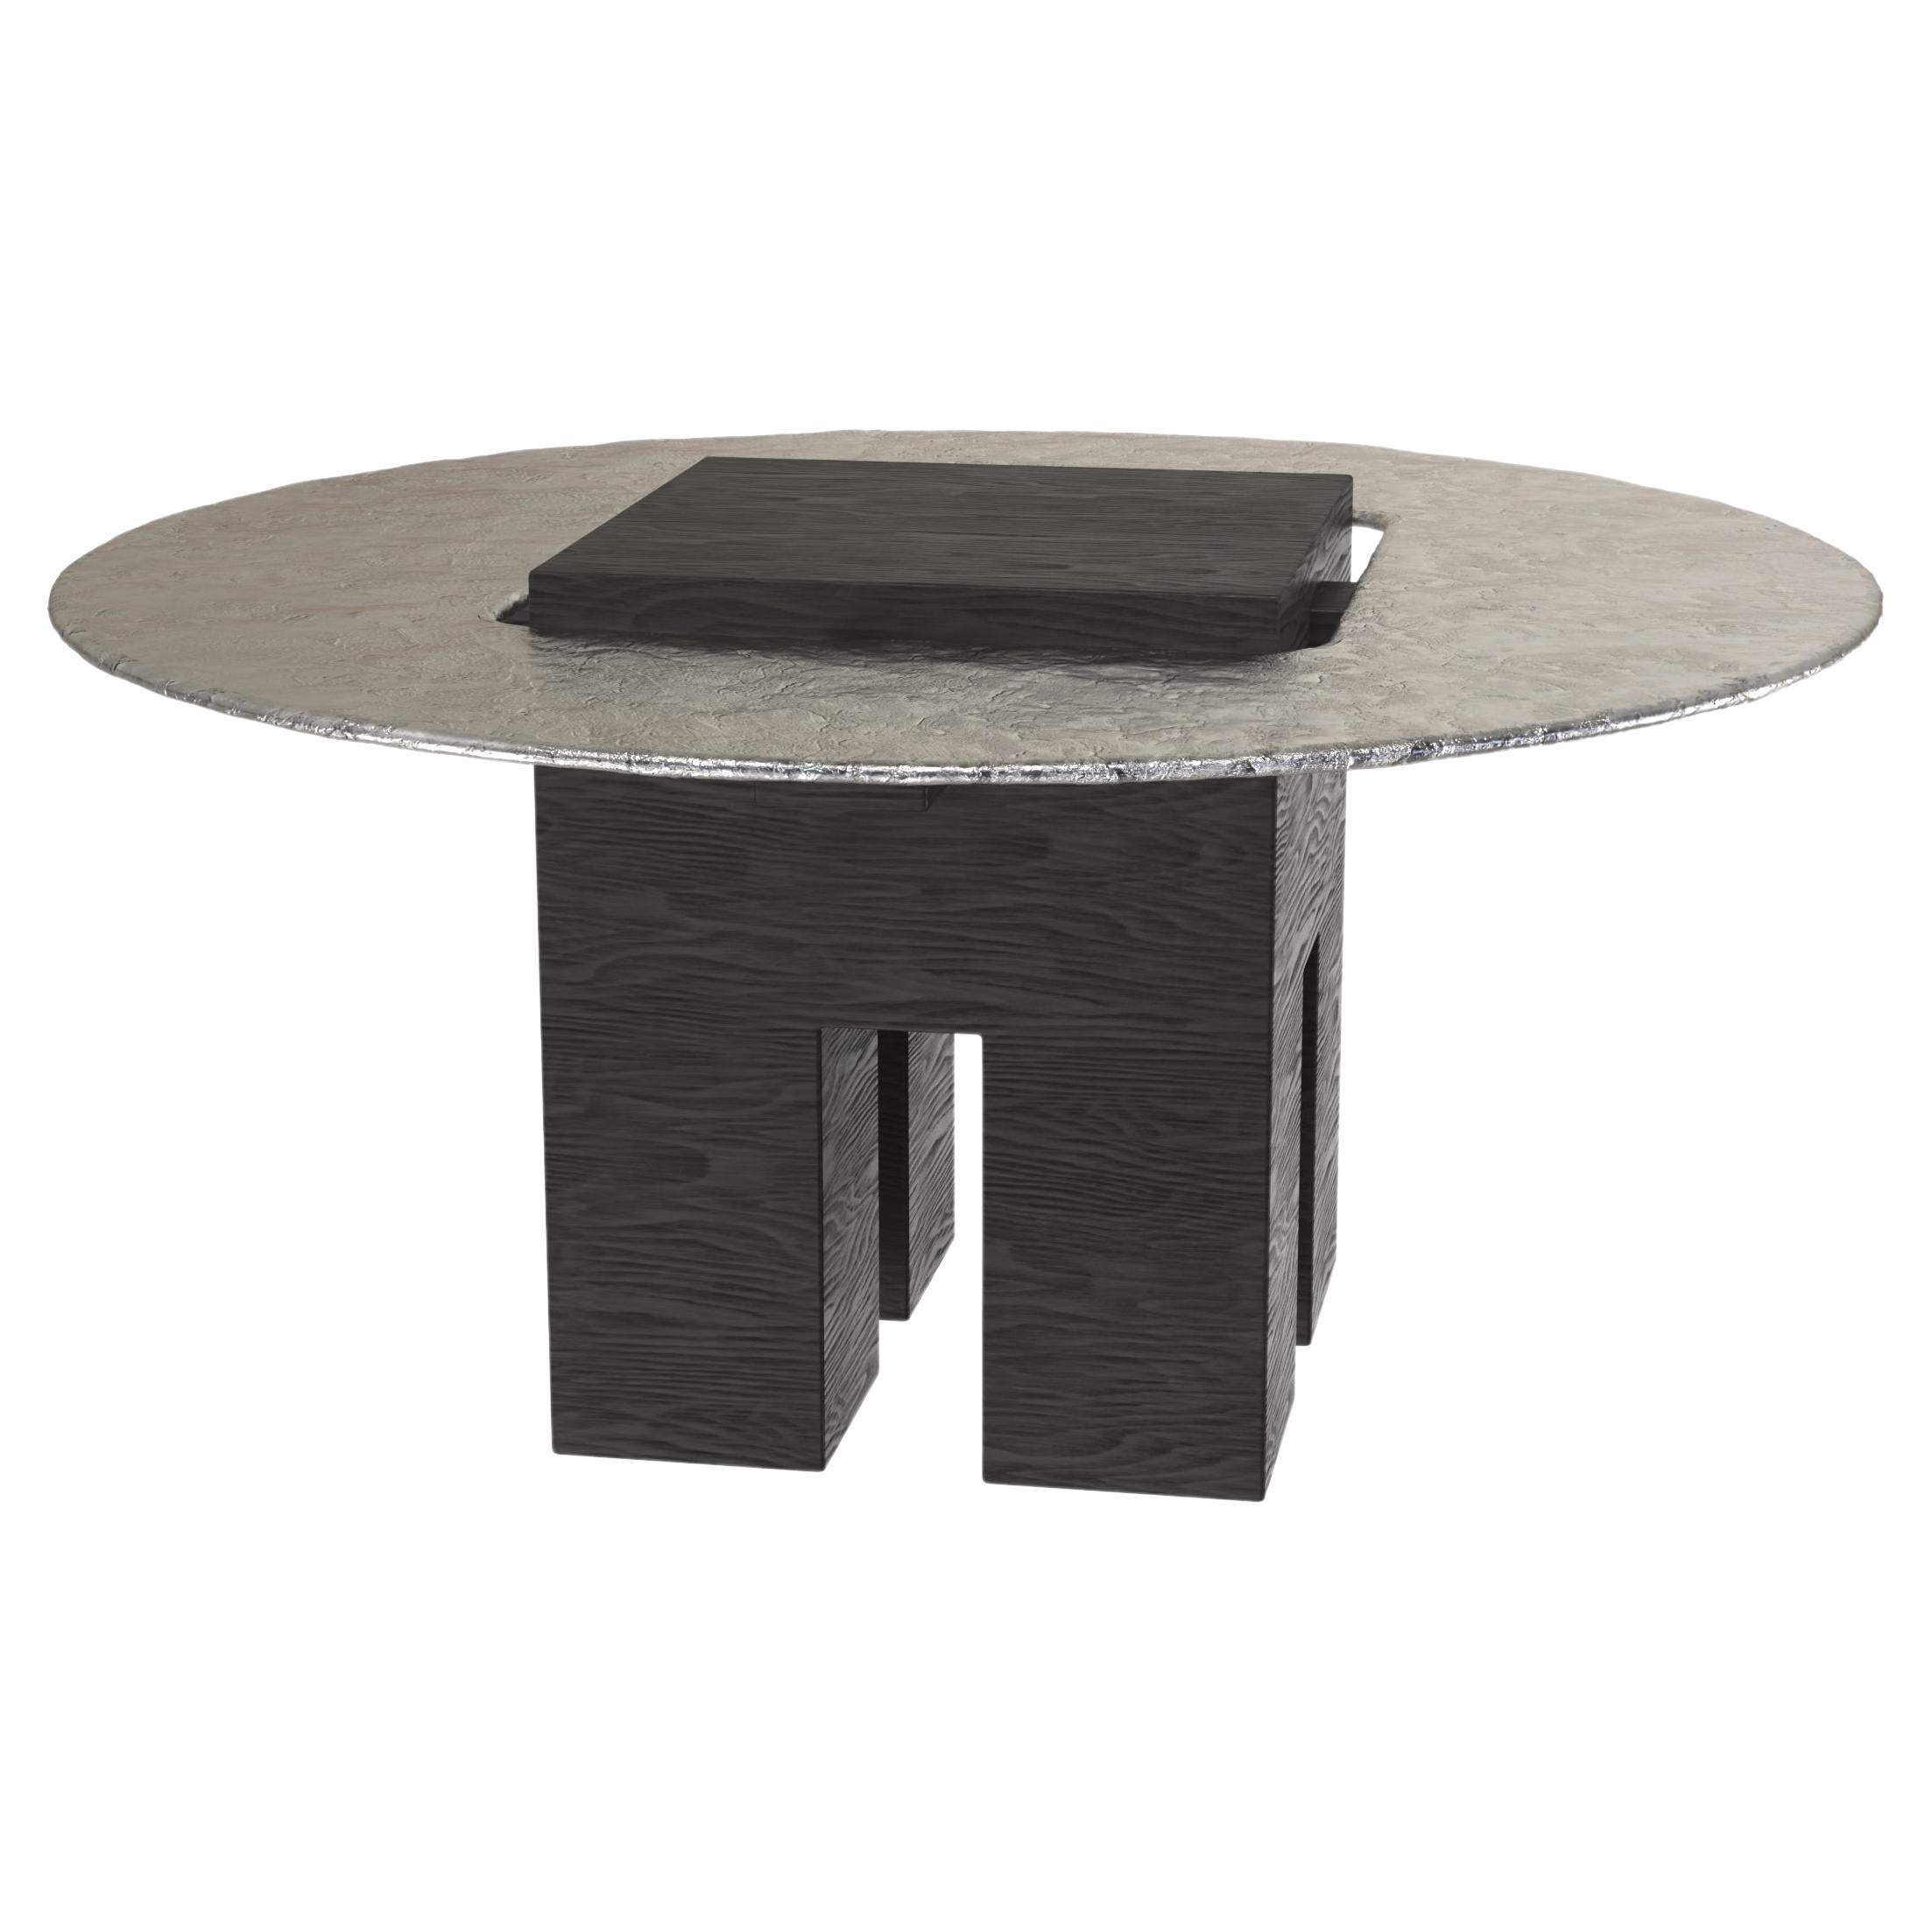 Limited Edition Aluminium Wood Table, Tempio V1 by Edizione Limitata For Sale